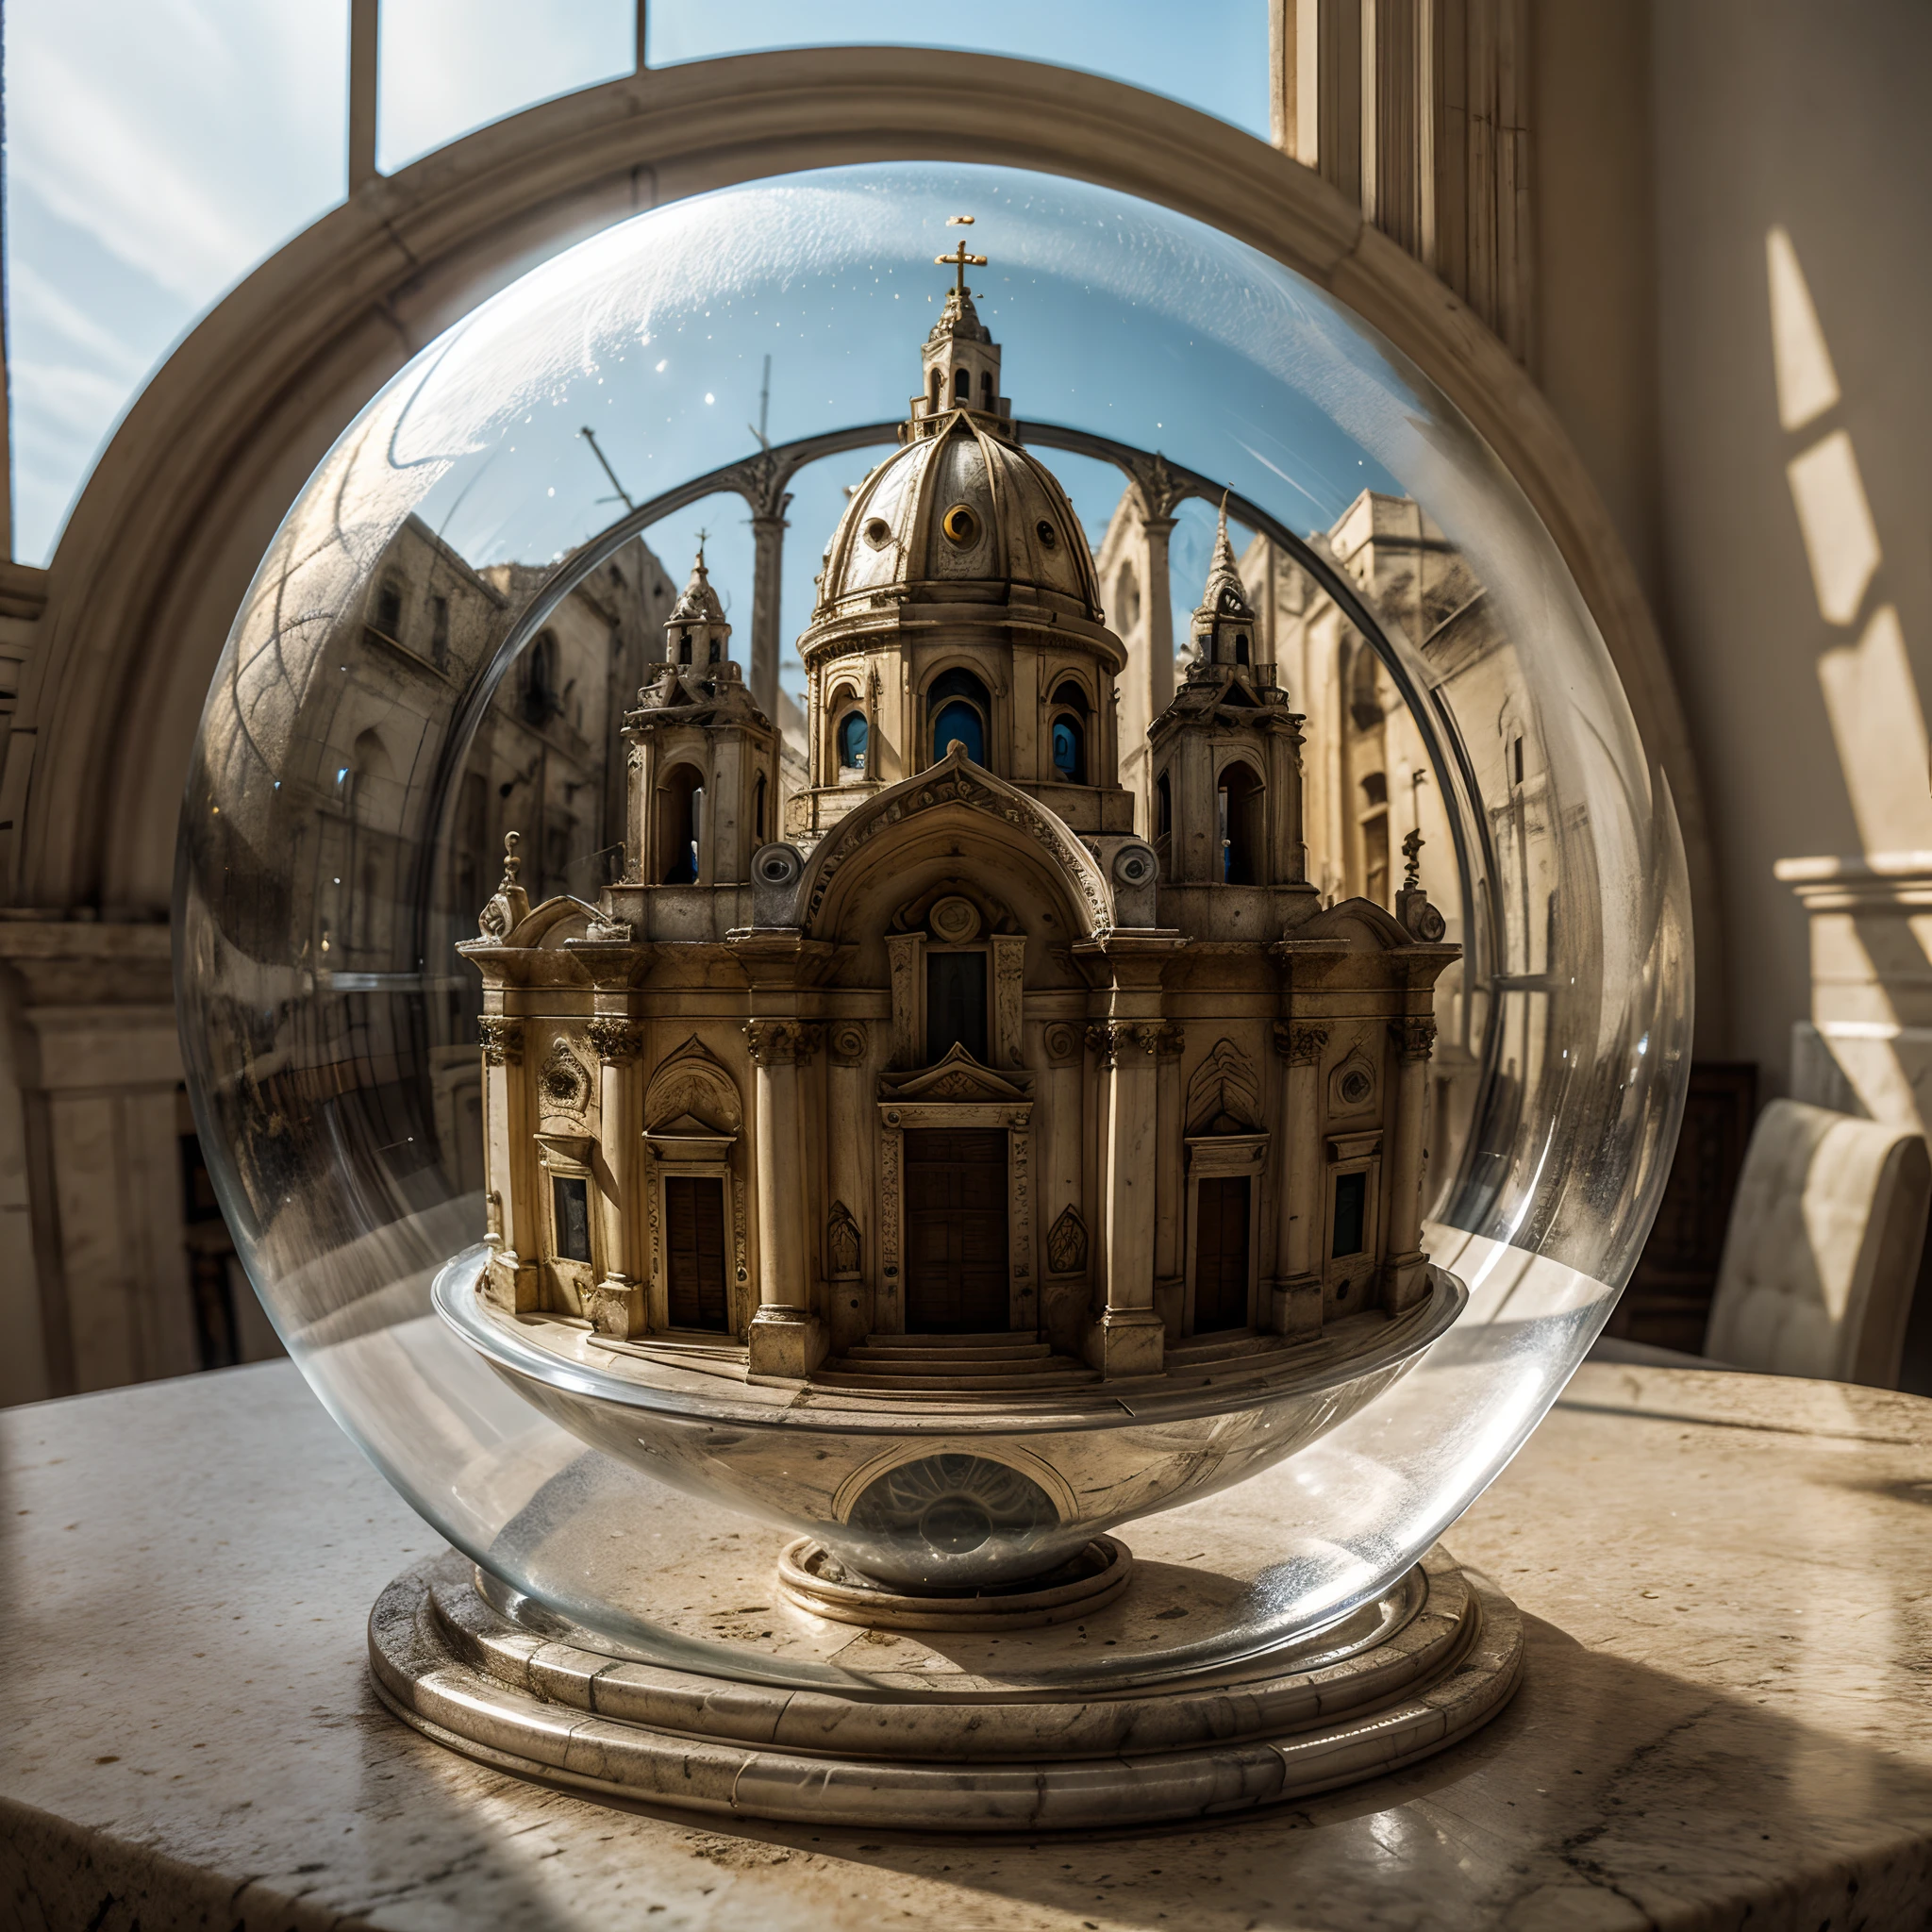 Kathedrale von Matera in einer Glasblase. Die Blase wird auf einer Marmorfensterbank platziert. Extrem detailliert, 8K, apokalyptischer Punk-Stil, Miniaturen, Makrofotografie in Nahaufnahme.